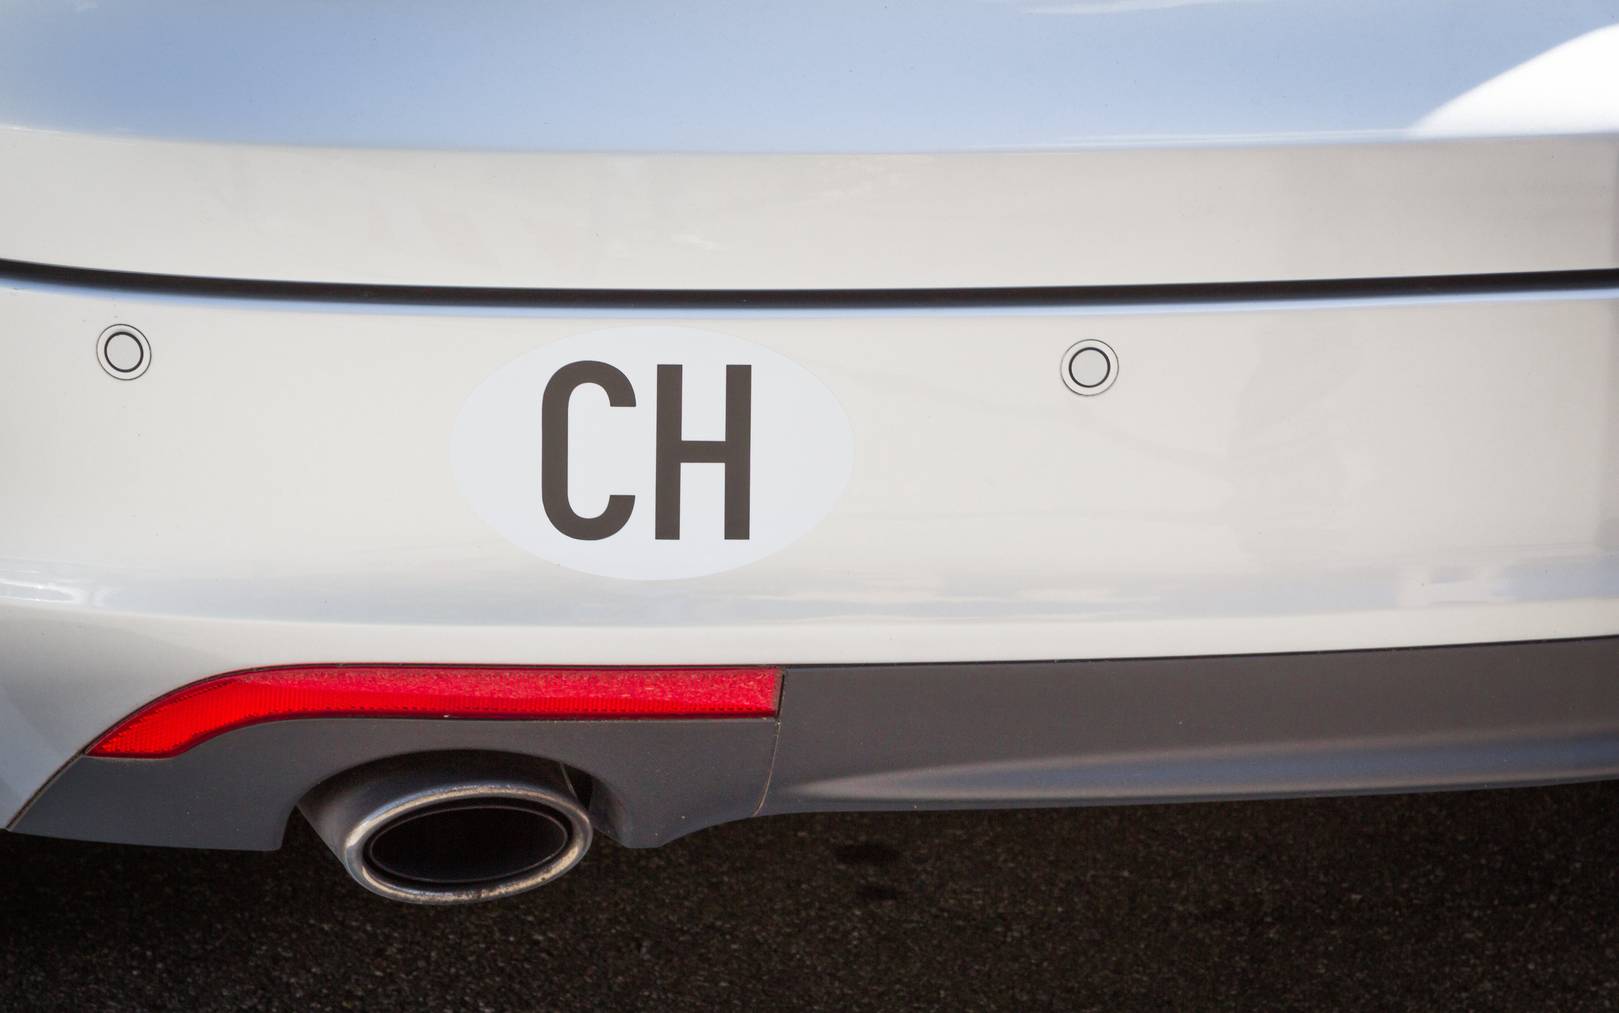 Wer sein Auto nicht vollkleben möchte, kann auch einen «CH»-Magneten kaufen. (Symbolbild: iStock)